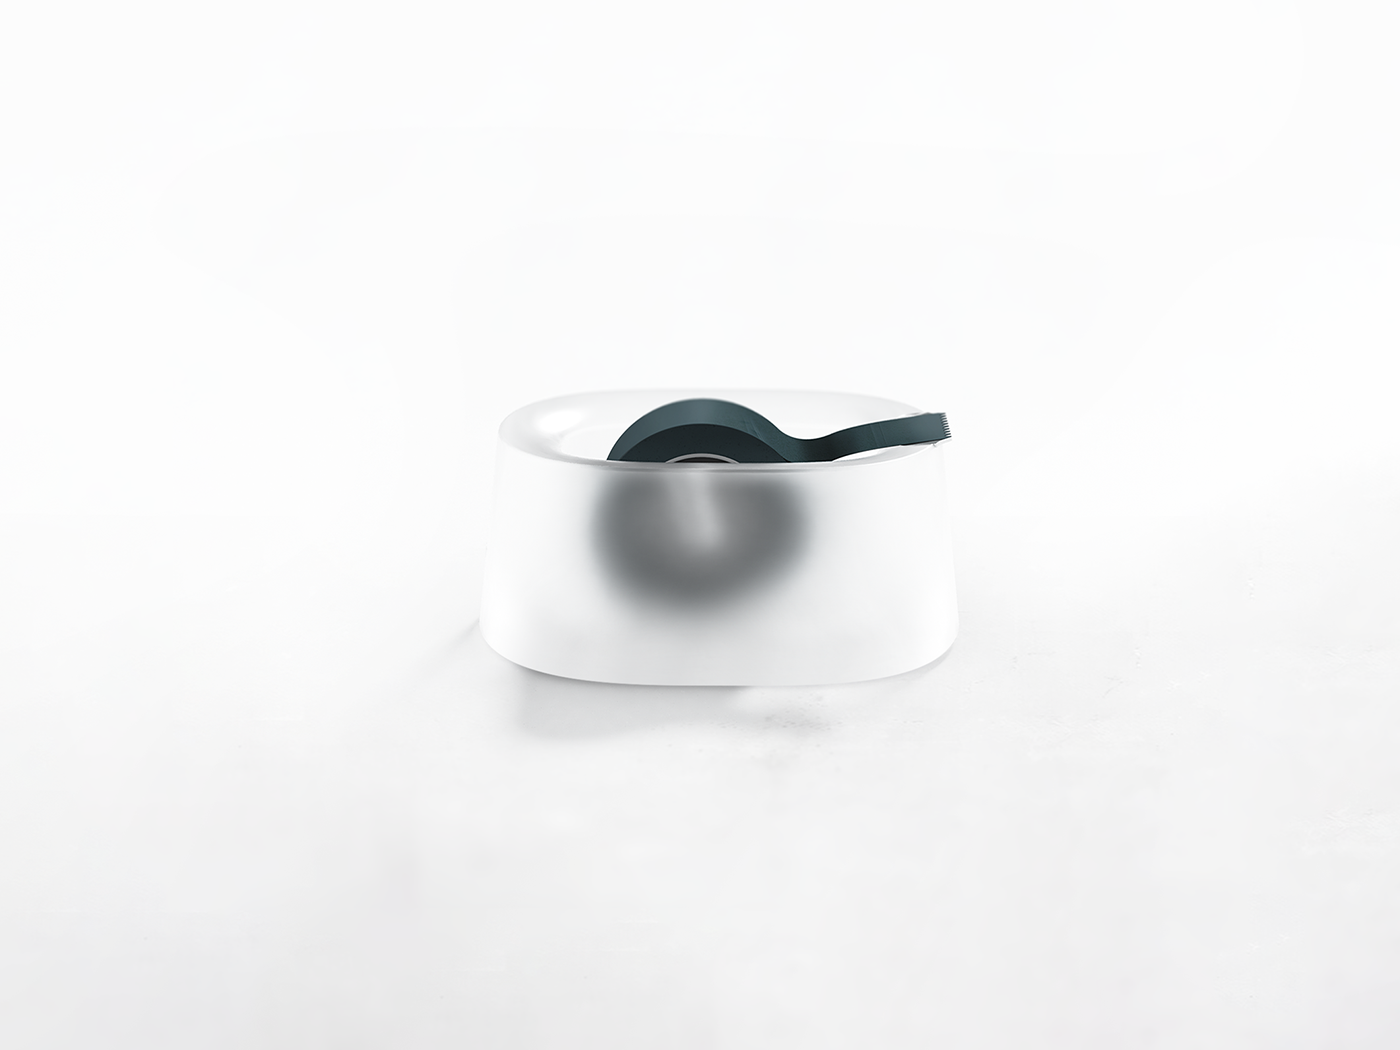 designchallenge Gadget industrialdesign minimal object productdesign Render Stationery tape dispenser translucent